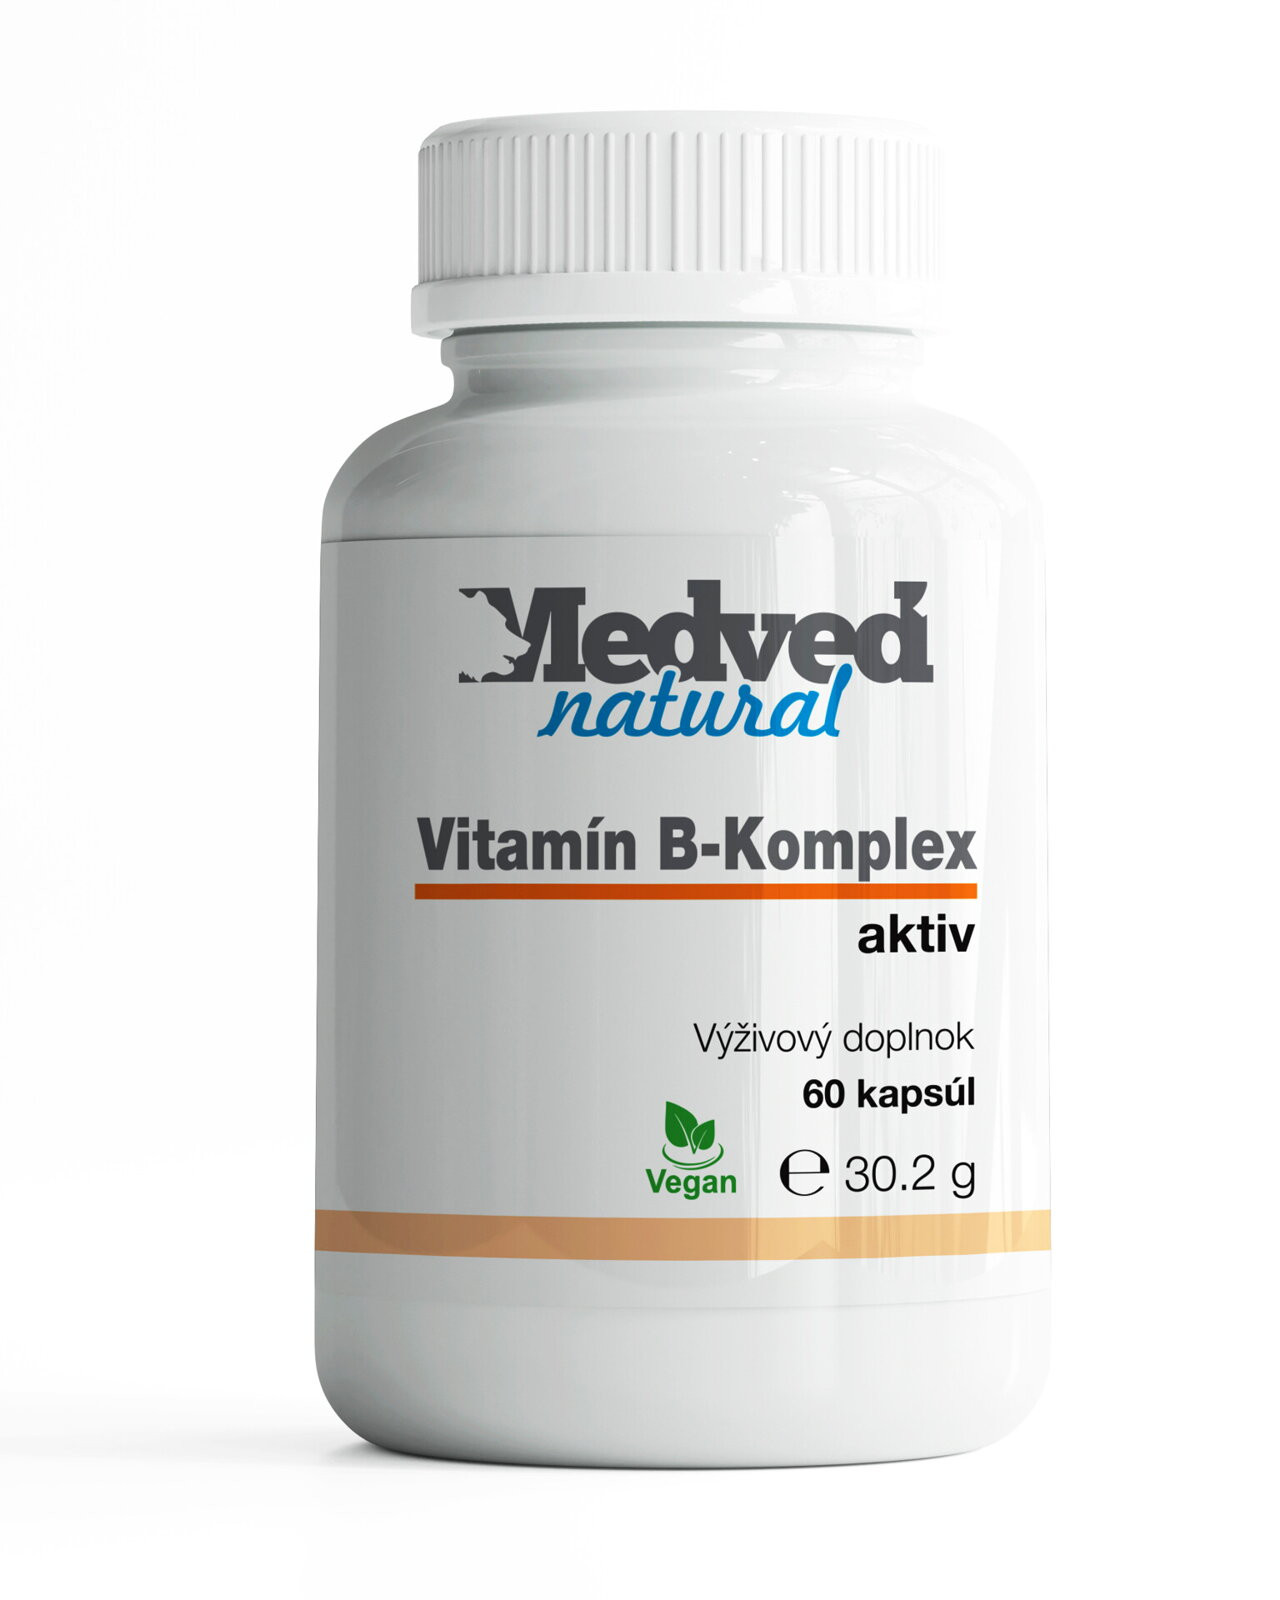 Vitamin B-Komplex medveď natural